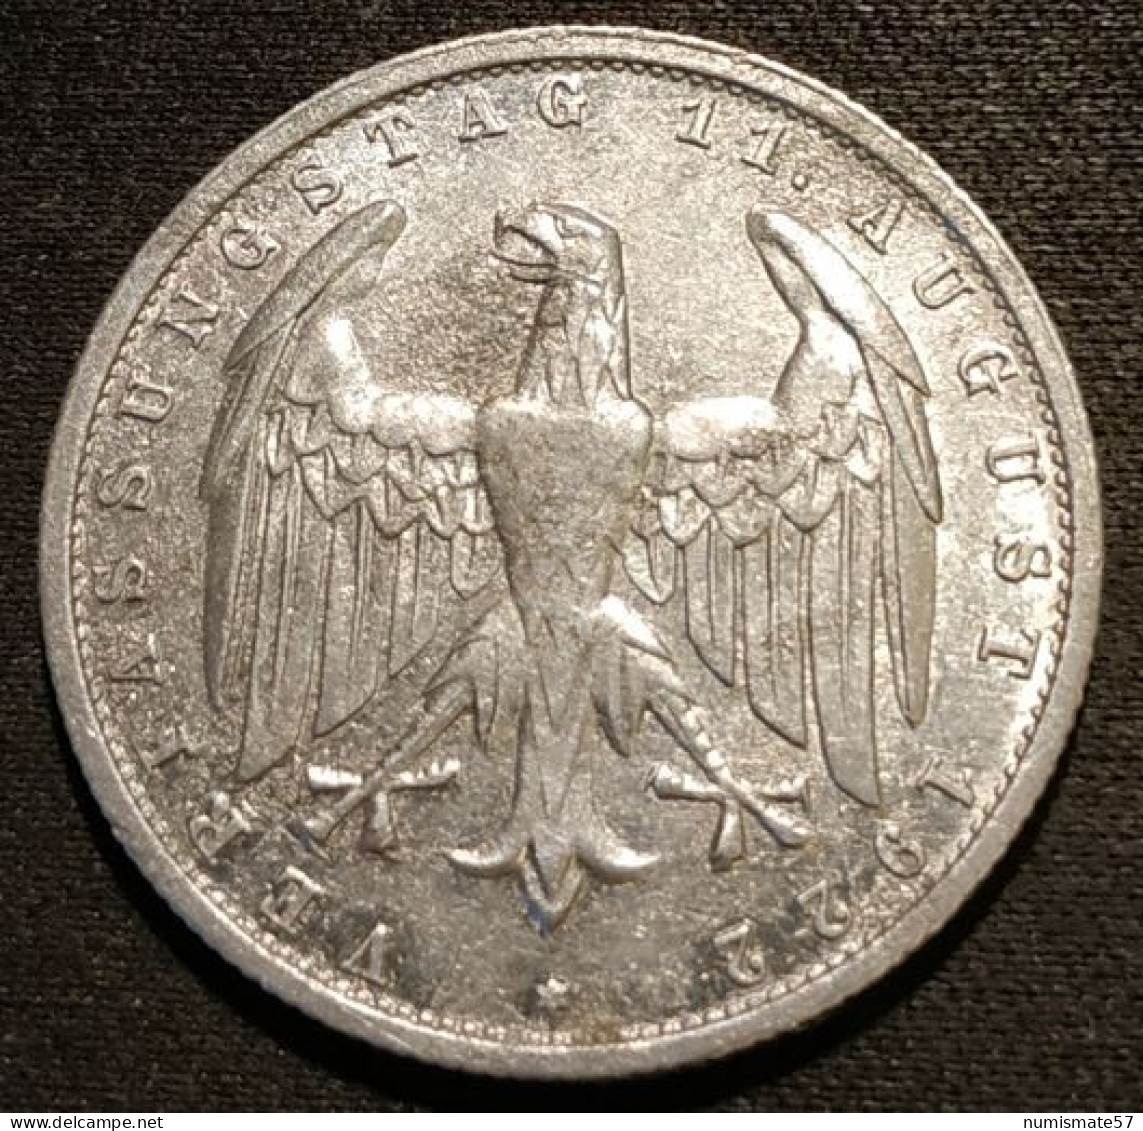 ALLEMAGNE - GERMANY - 3 MARK 1922 A - Anniversaire De La Constitution De La Weimar - KM 29 - 3 Mark & 3 Reichsmark